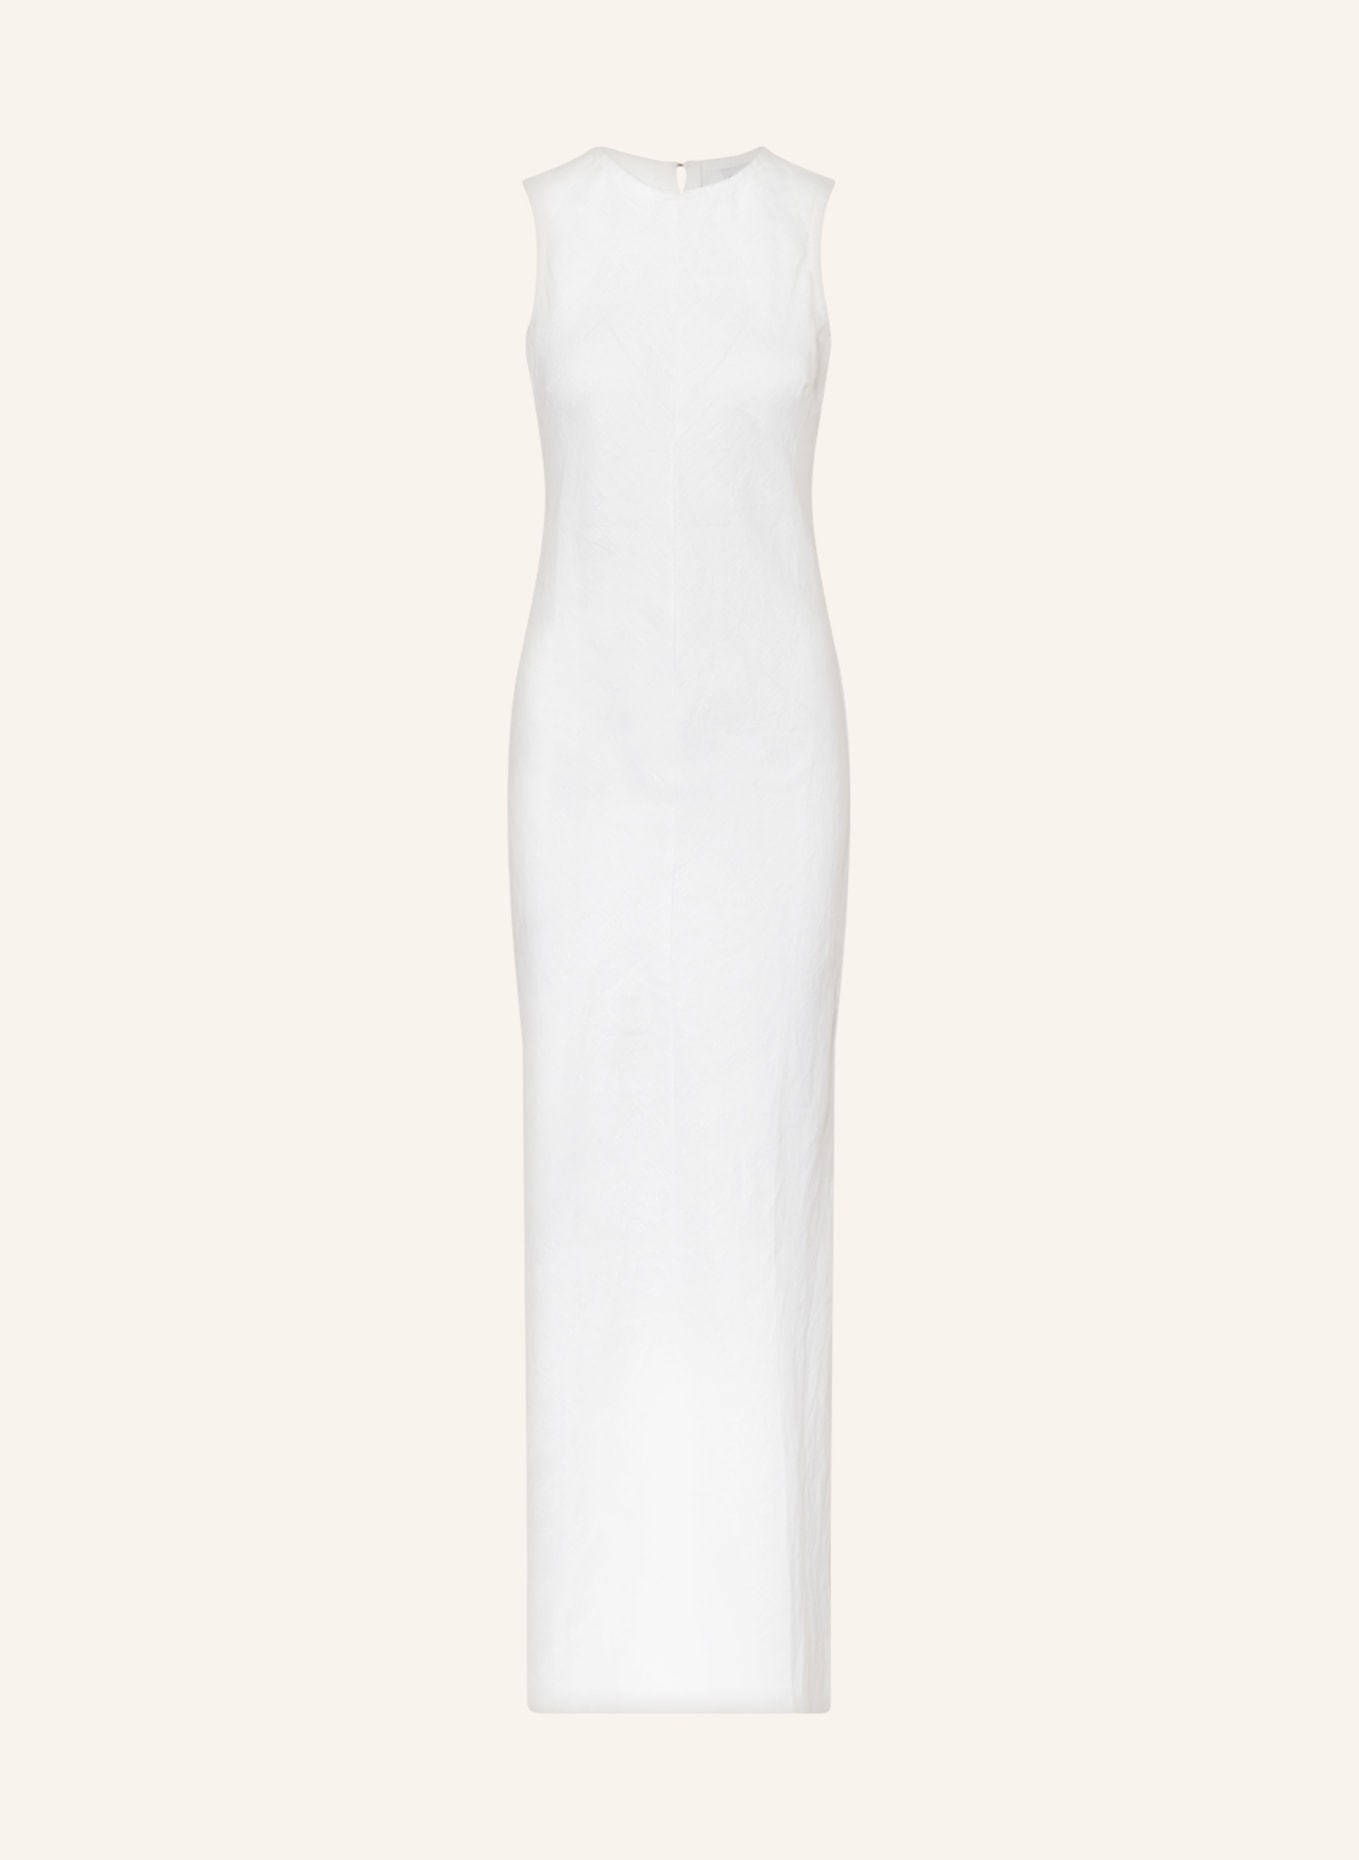 FAITHFULL THE BRAND Linen dress, Color: WHITE (Image 1)